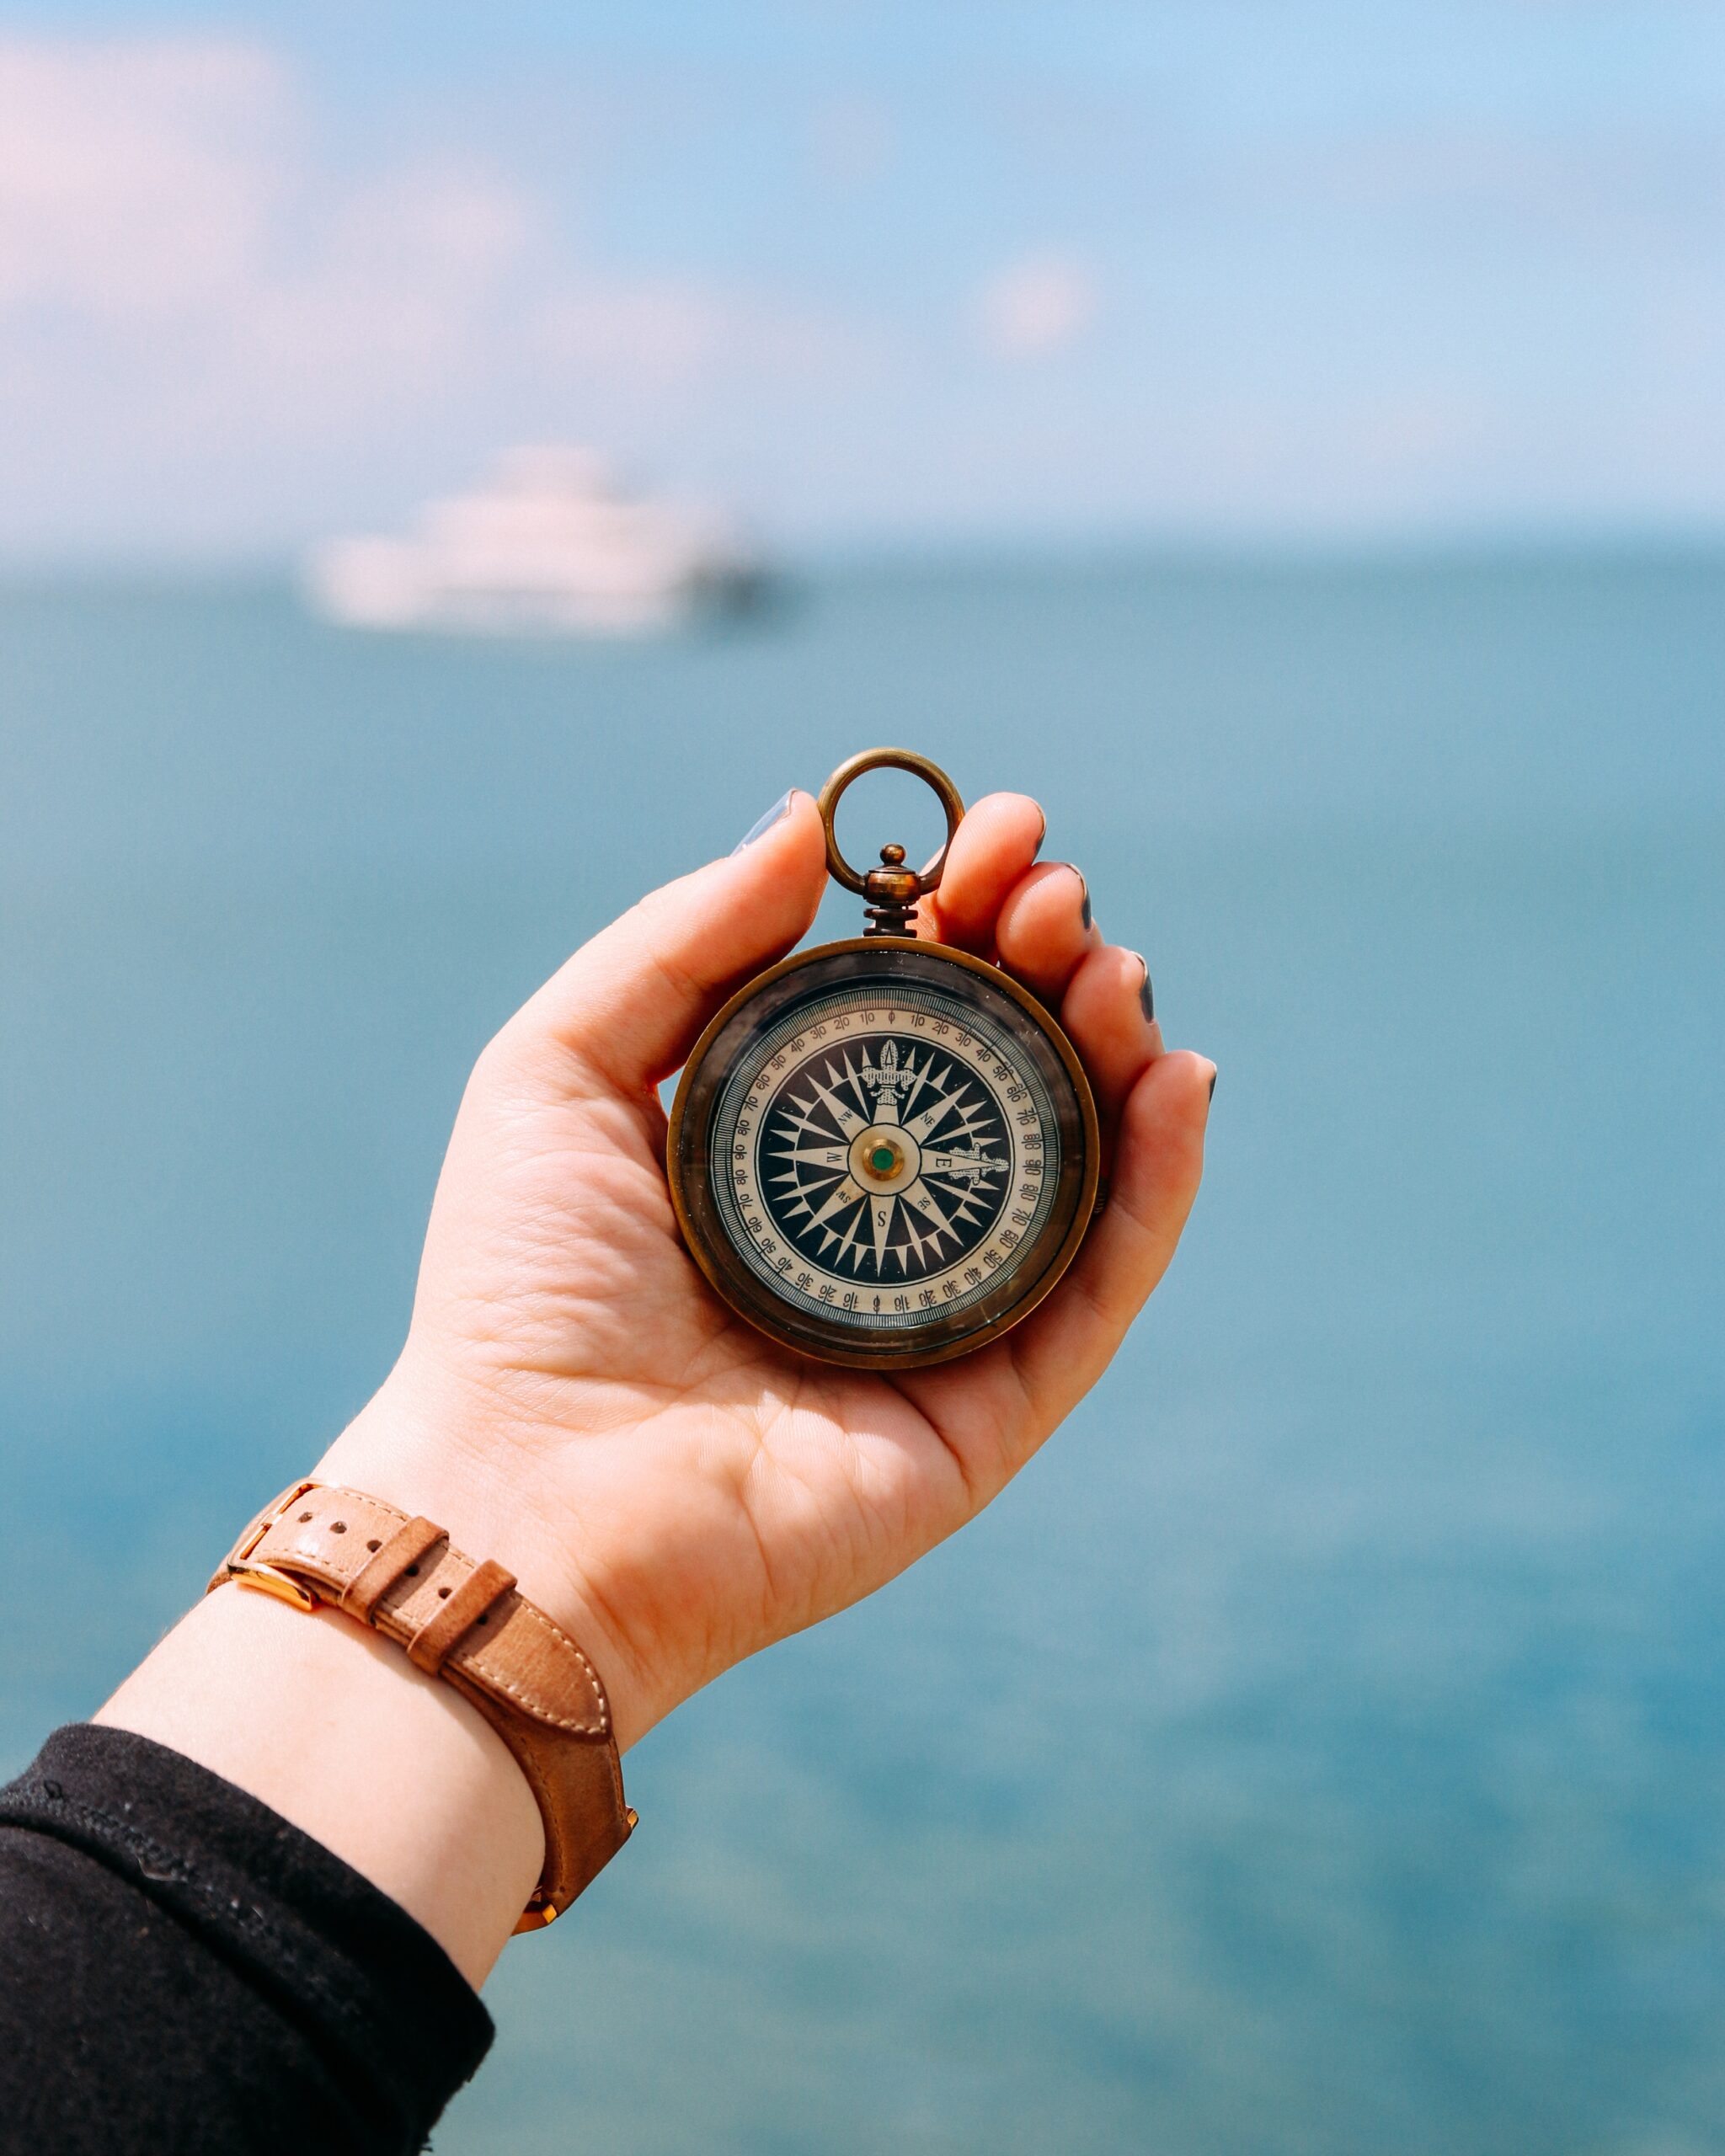 Frauenhand hält Kompass, im Hintergrund Meer und Schiff